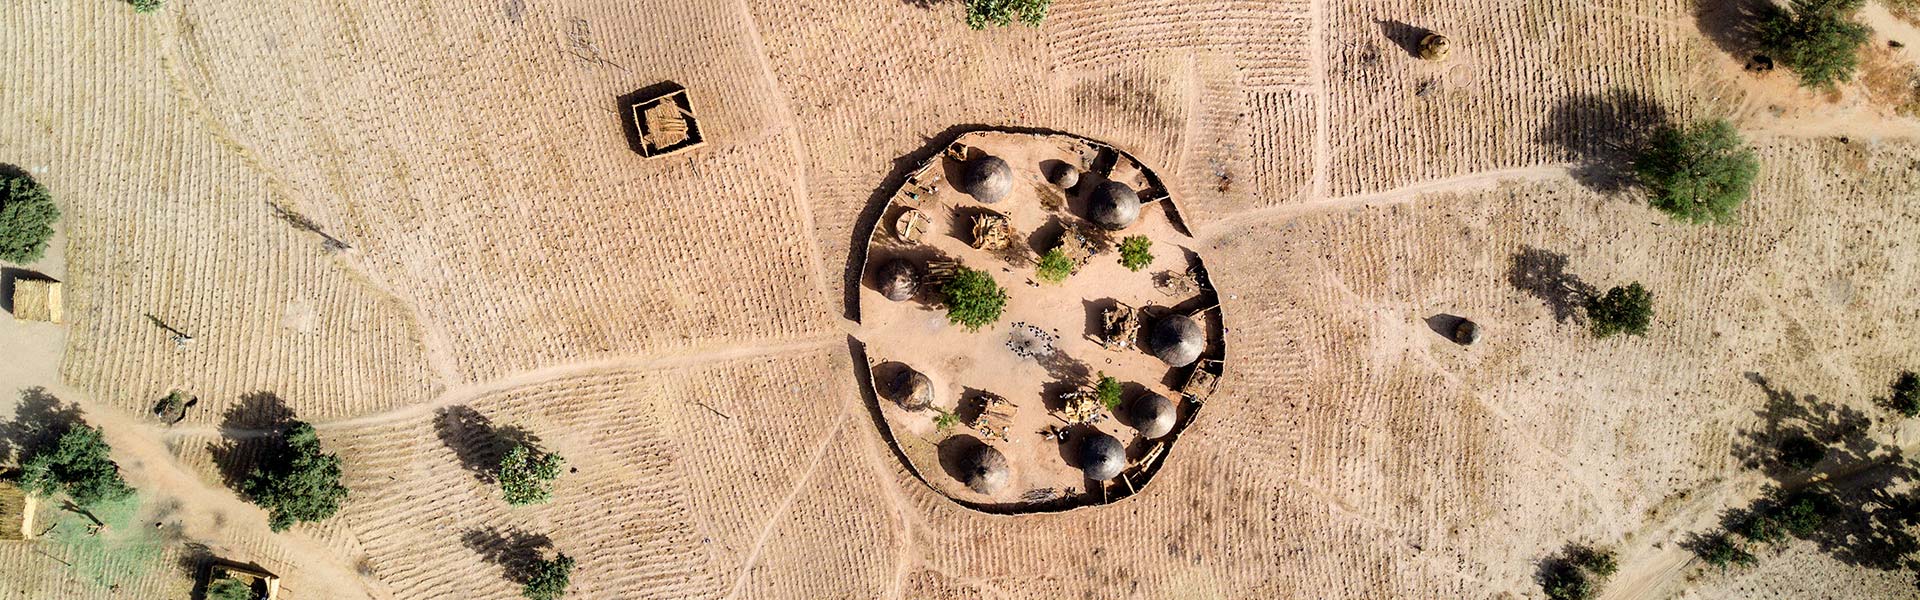 Luftfoto av sirkelformet landsby med små hytter i Niger. Foto: Torleif Svensson